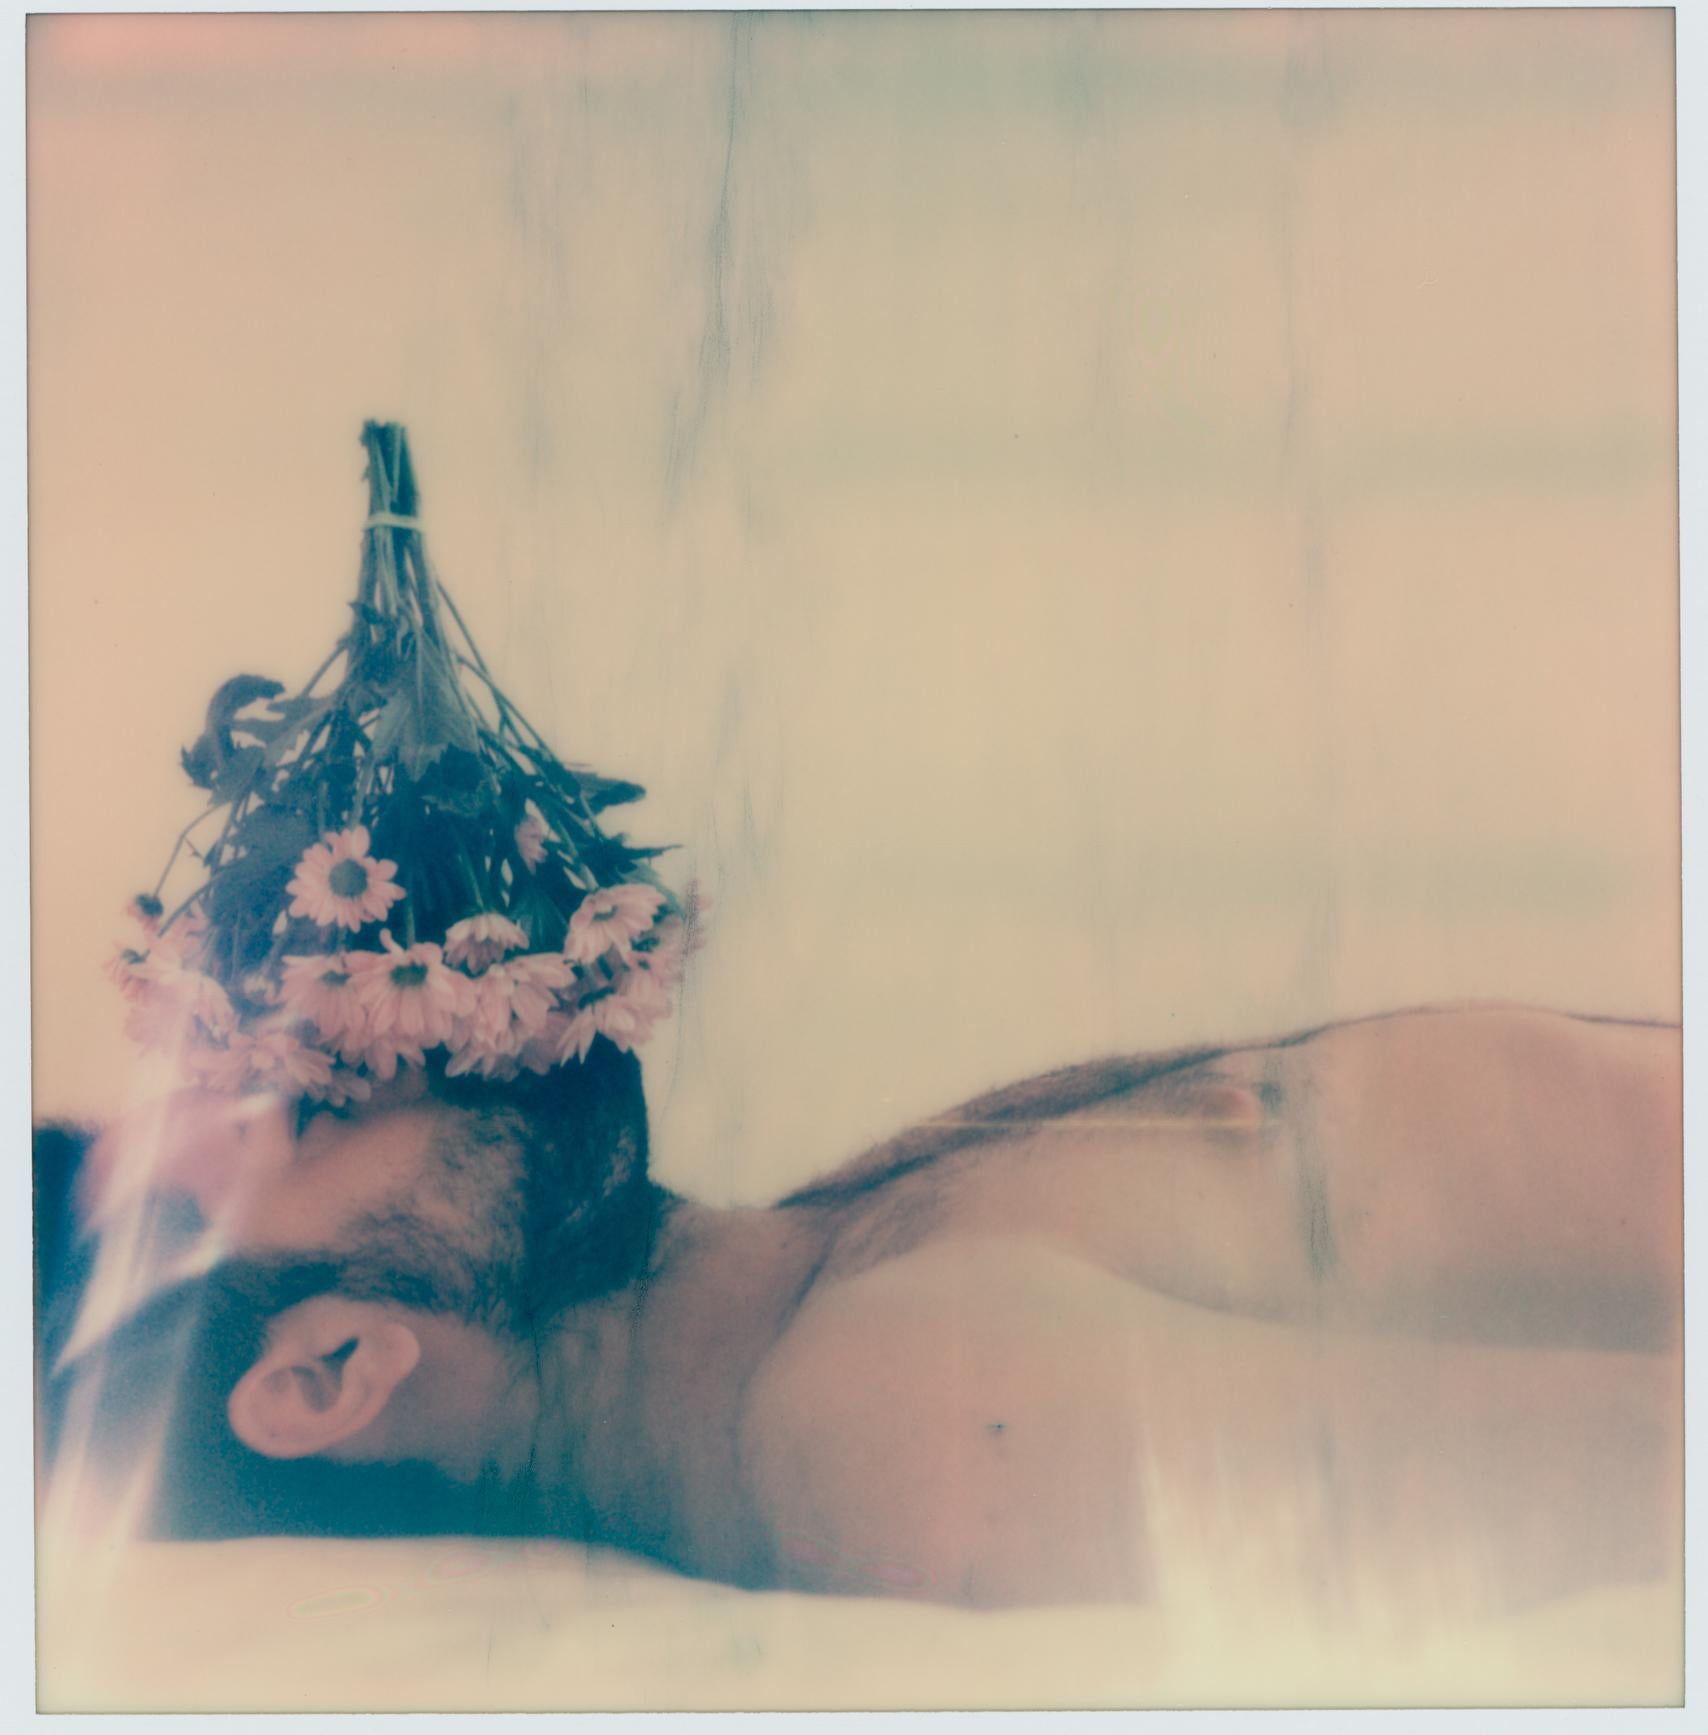 THE GROUND - SELF PORTRAIT - 21. Jahrhundert, Zeitgenössisch, Polaroid, Männer, Liebe